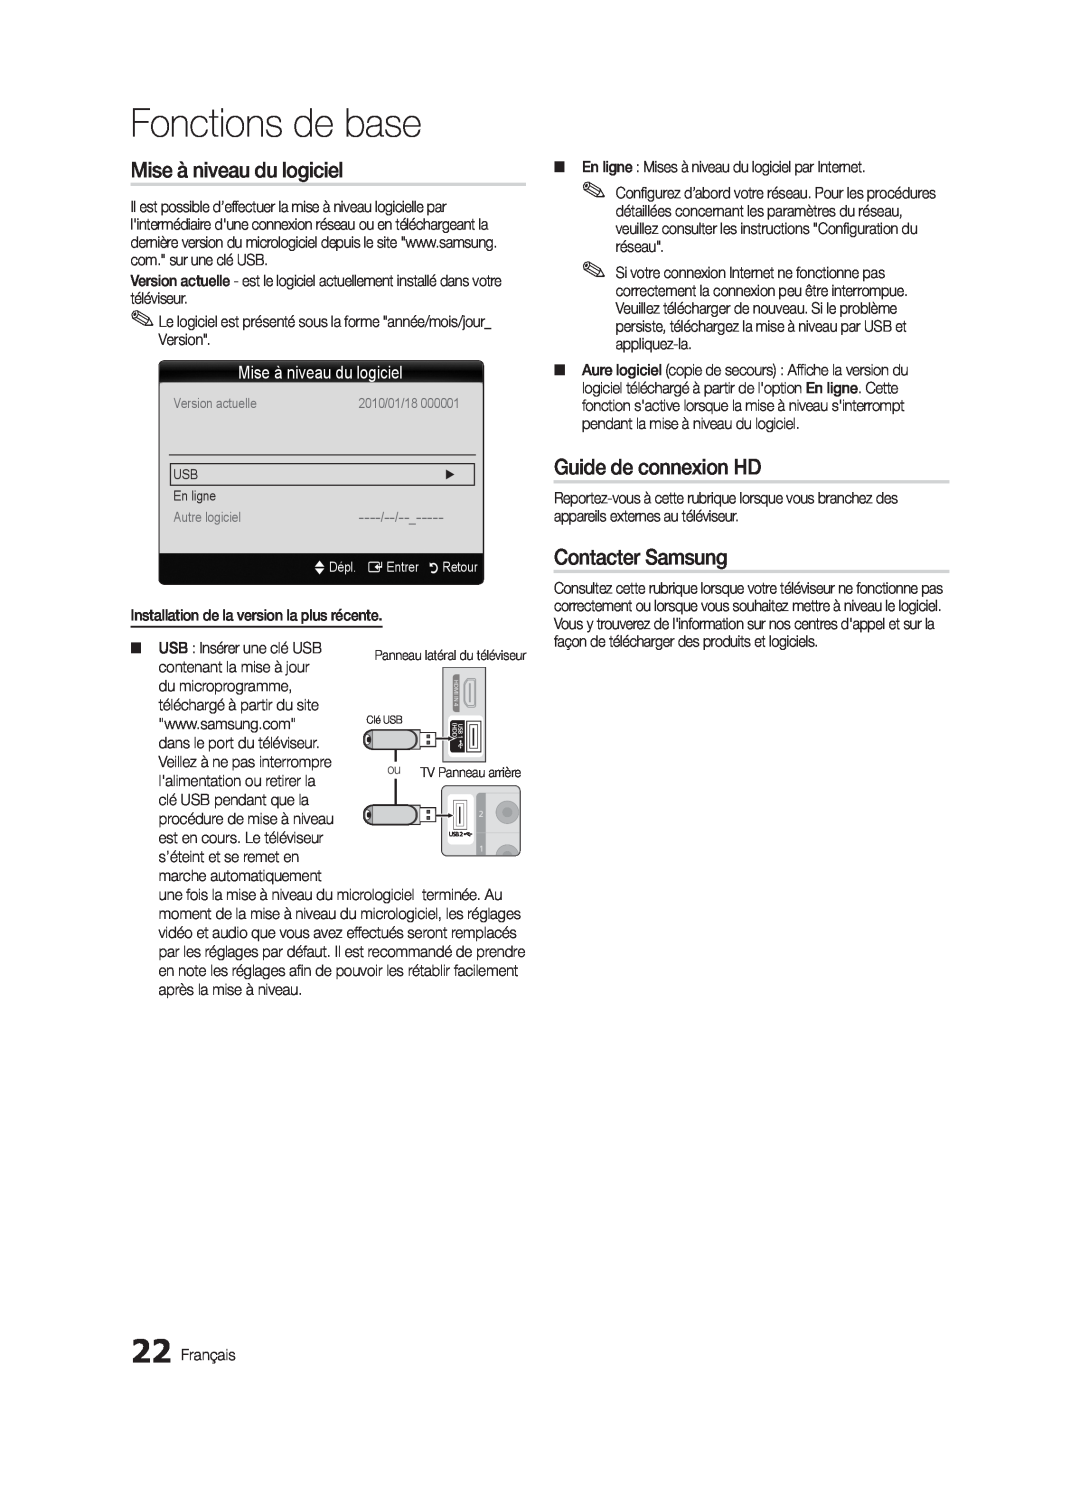 Samsung LN32C550 Mise à niveau du logiciel, Guide de connexion HD, Contacter Samsung, Fonctions de base, Version actuelle 